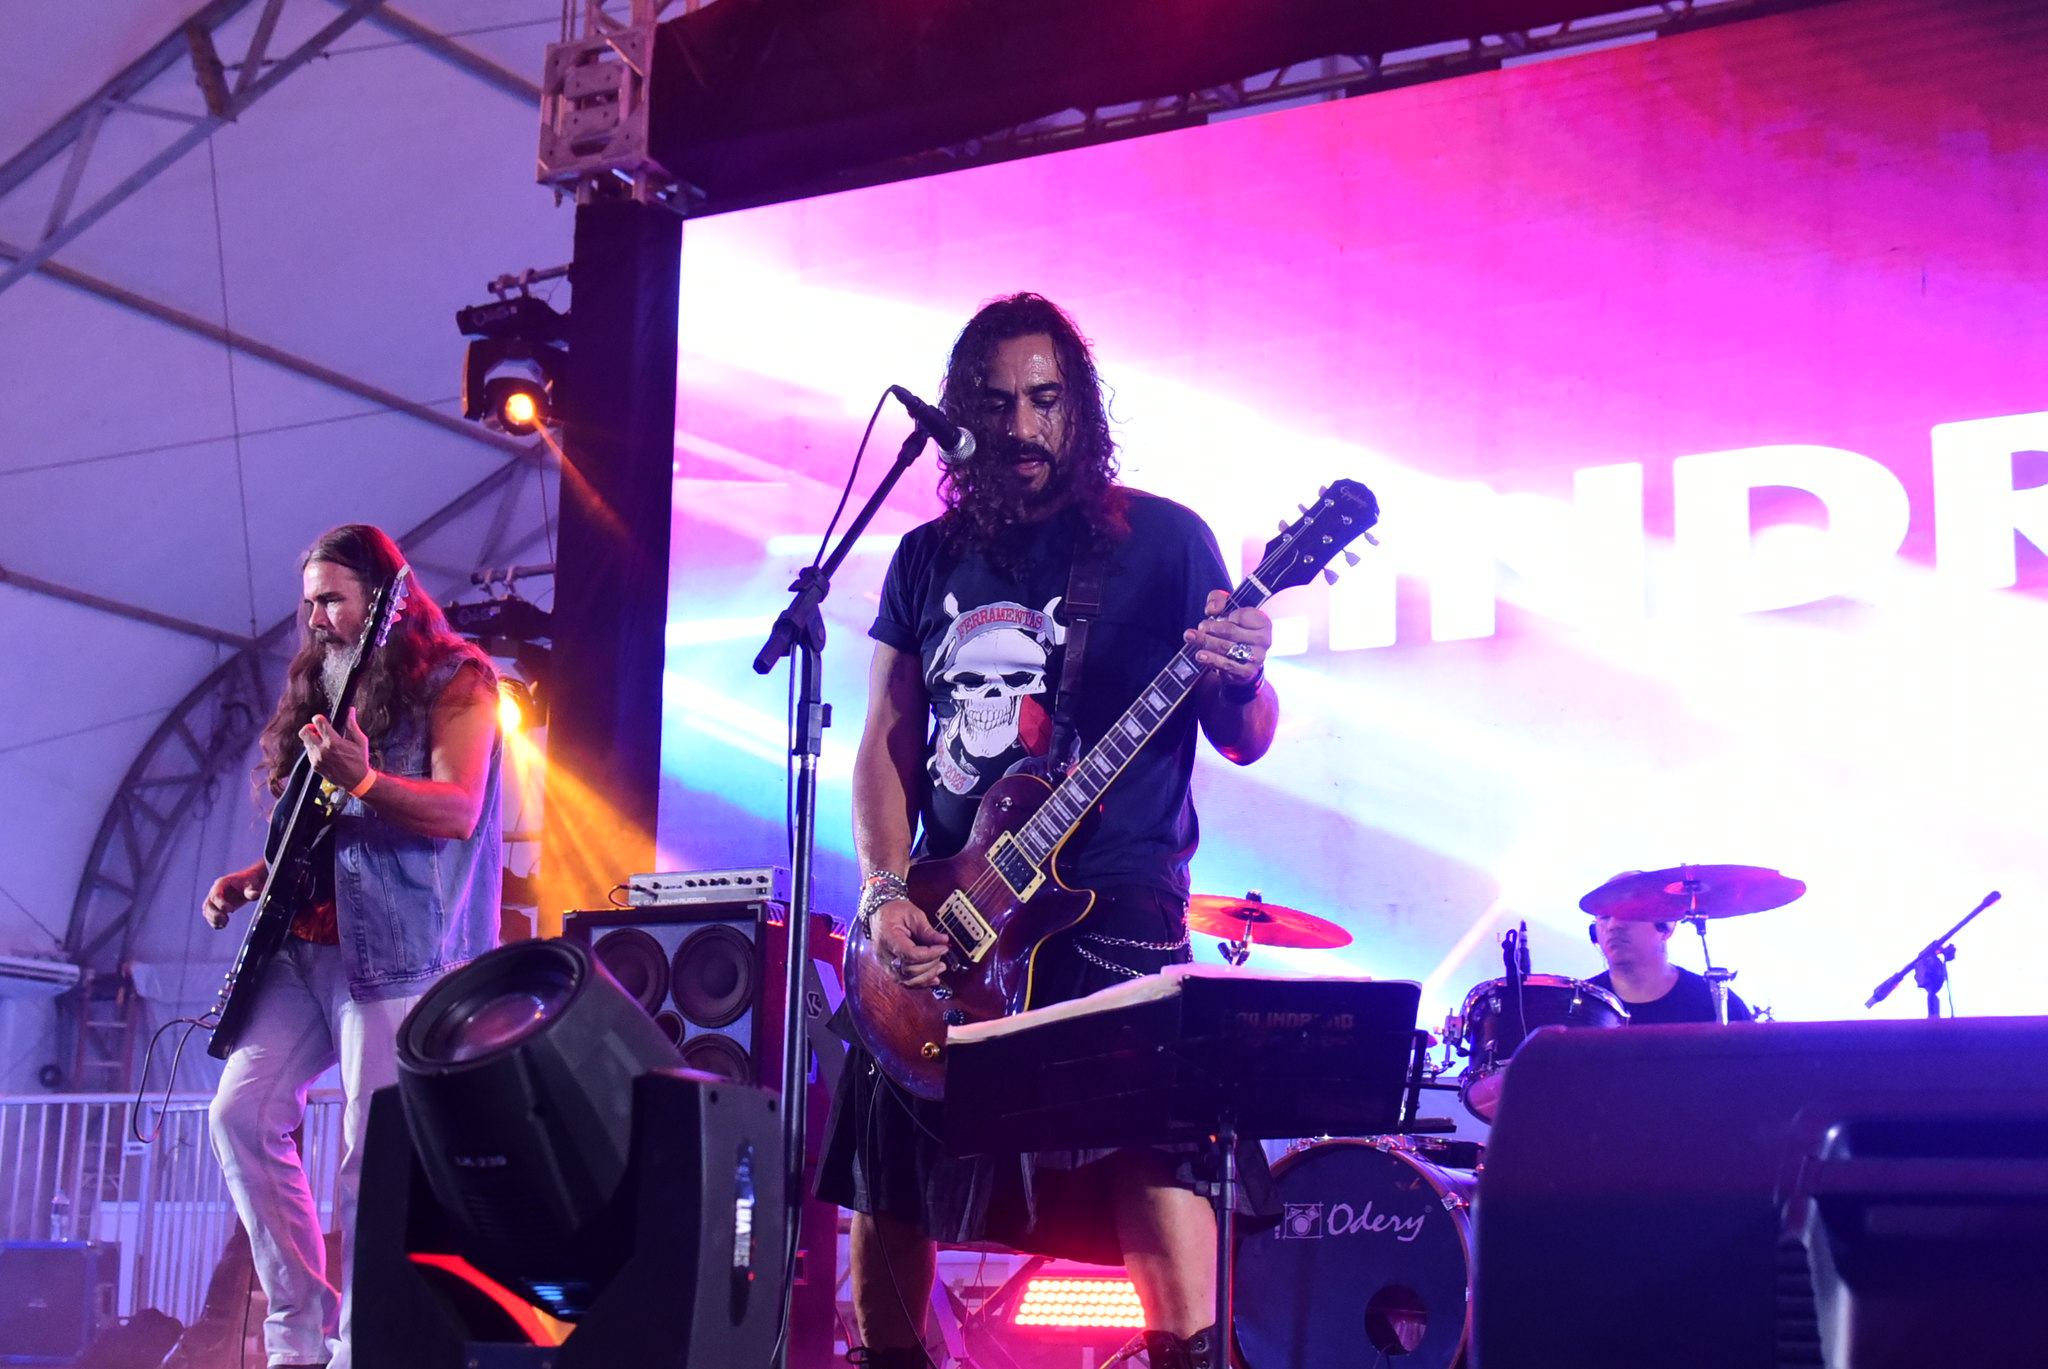 Festival em Maricá, Art&Bier, fecha primeira semana unindo rock e motocicletas